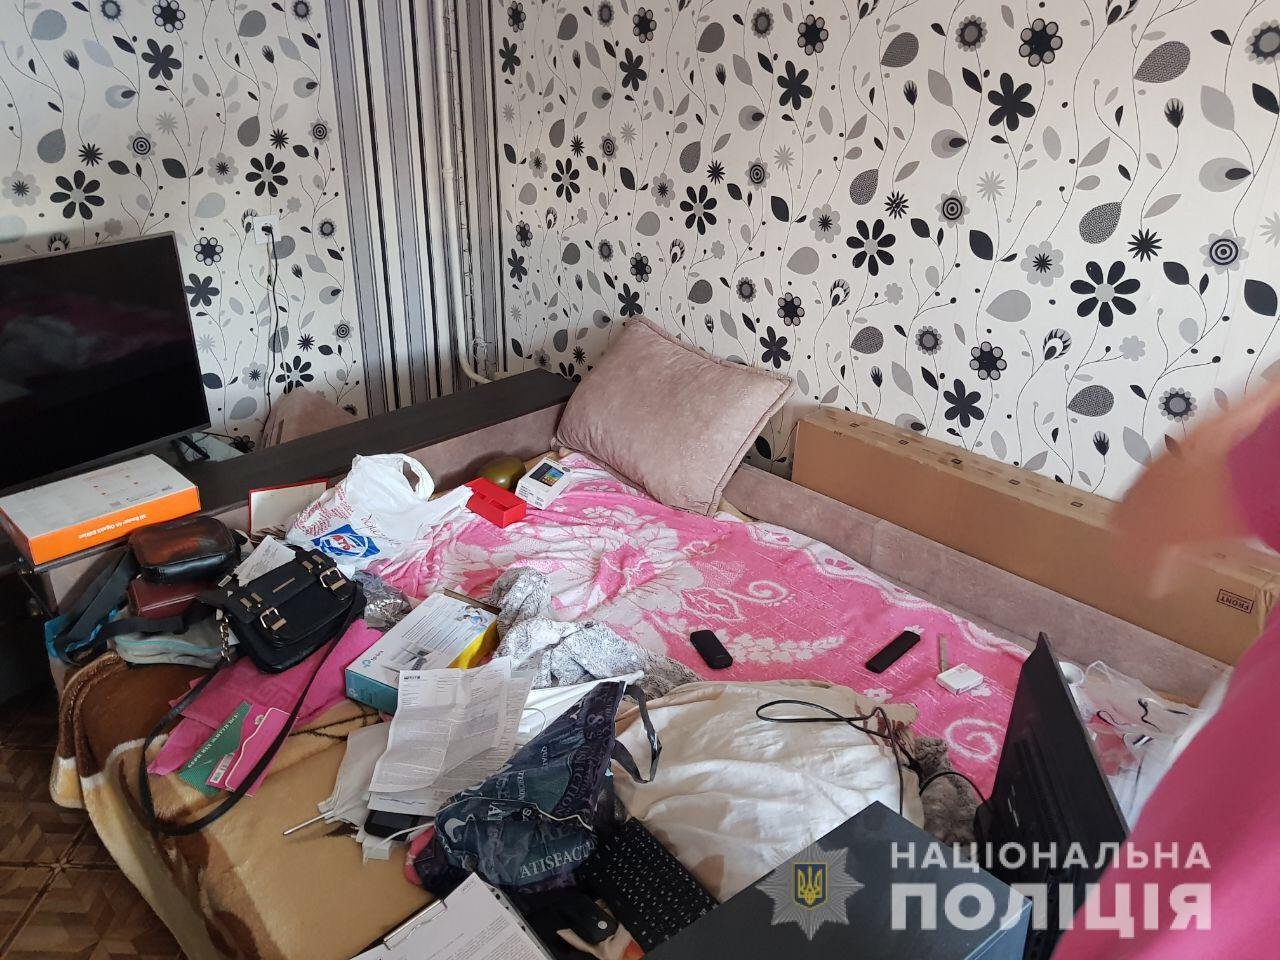 Юных украинок продавали в секс-рабство: копы шокировали подробностями, фото 18+